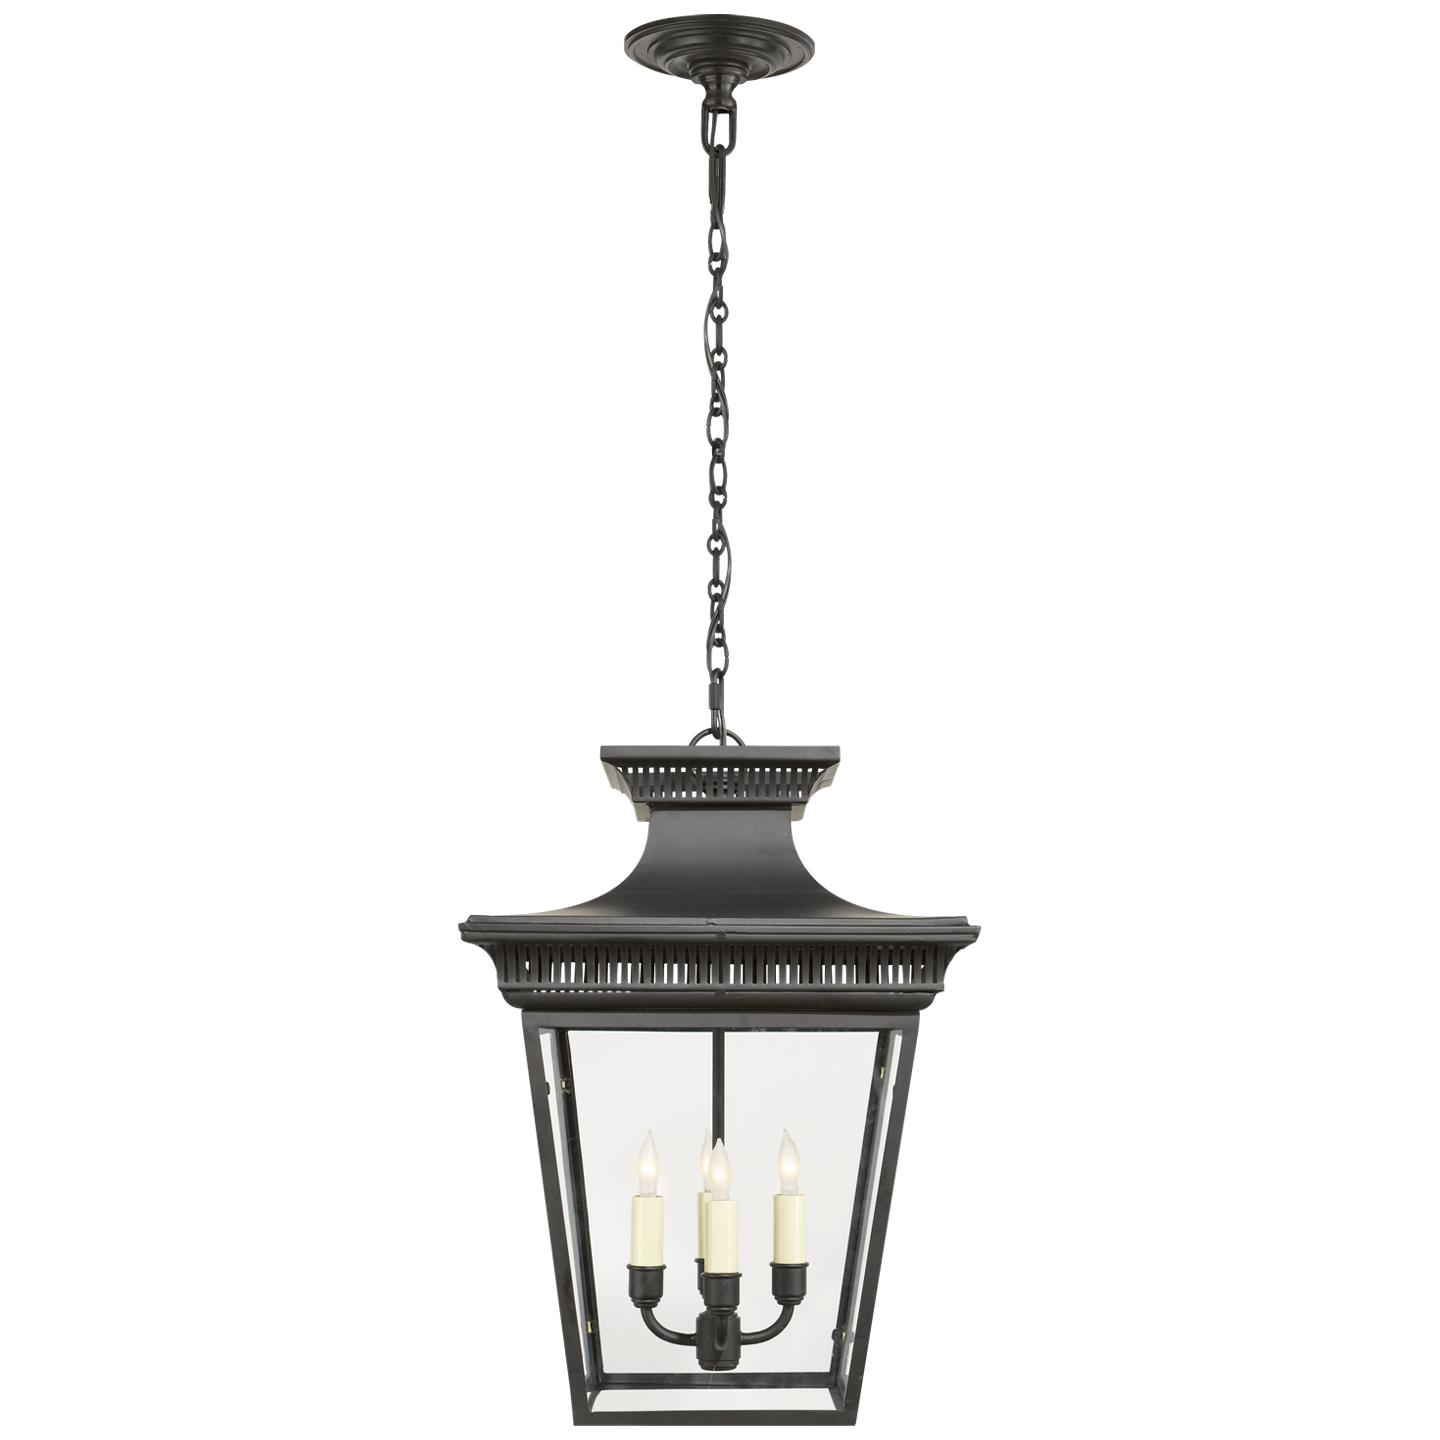 Купить Подвесной светильник Elsinore Medium Hanging Lantern в интернет-магазине roooms.ru